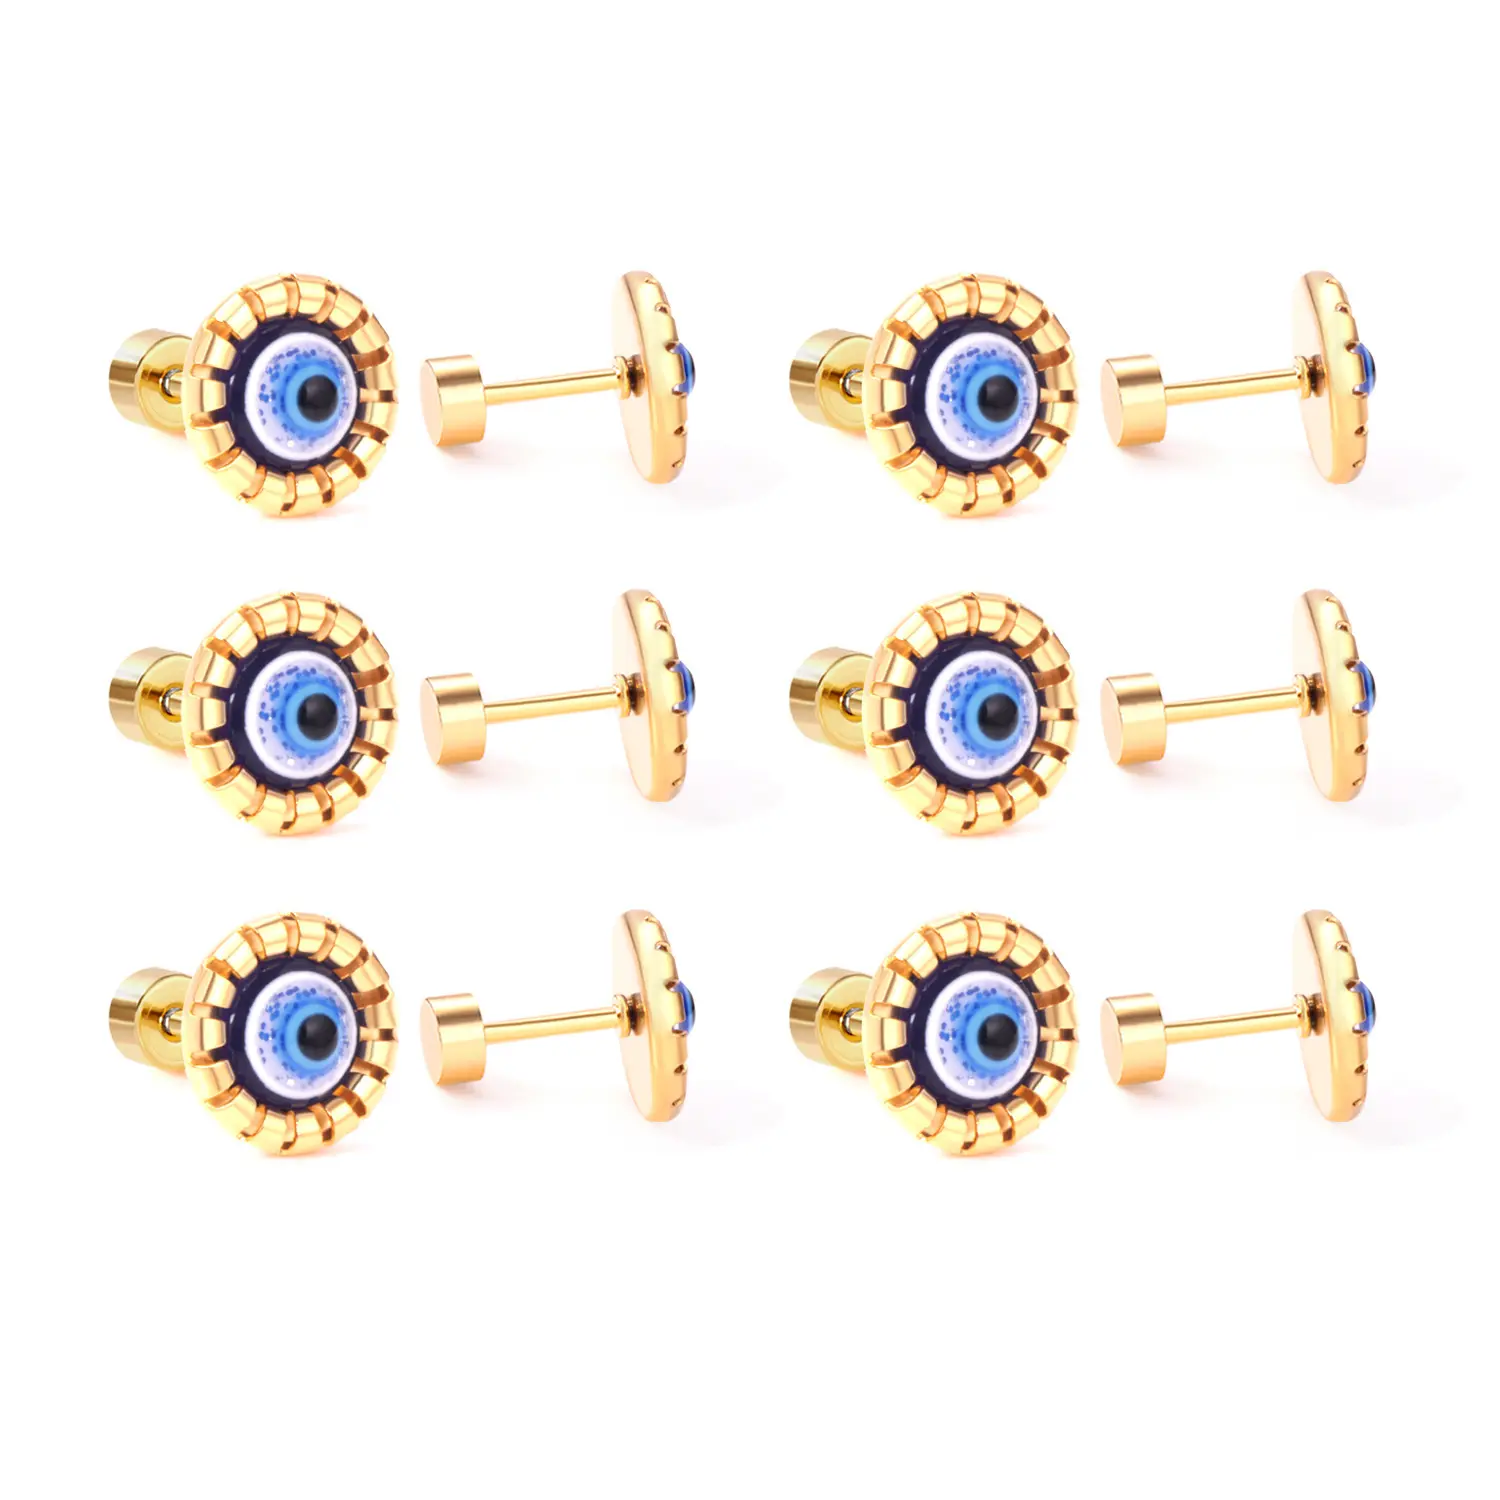 Retro Original Design Flash Devil's Eye Earrings Stainless Steel Jewelry Stud Blue Evil Eye Earrings Women